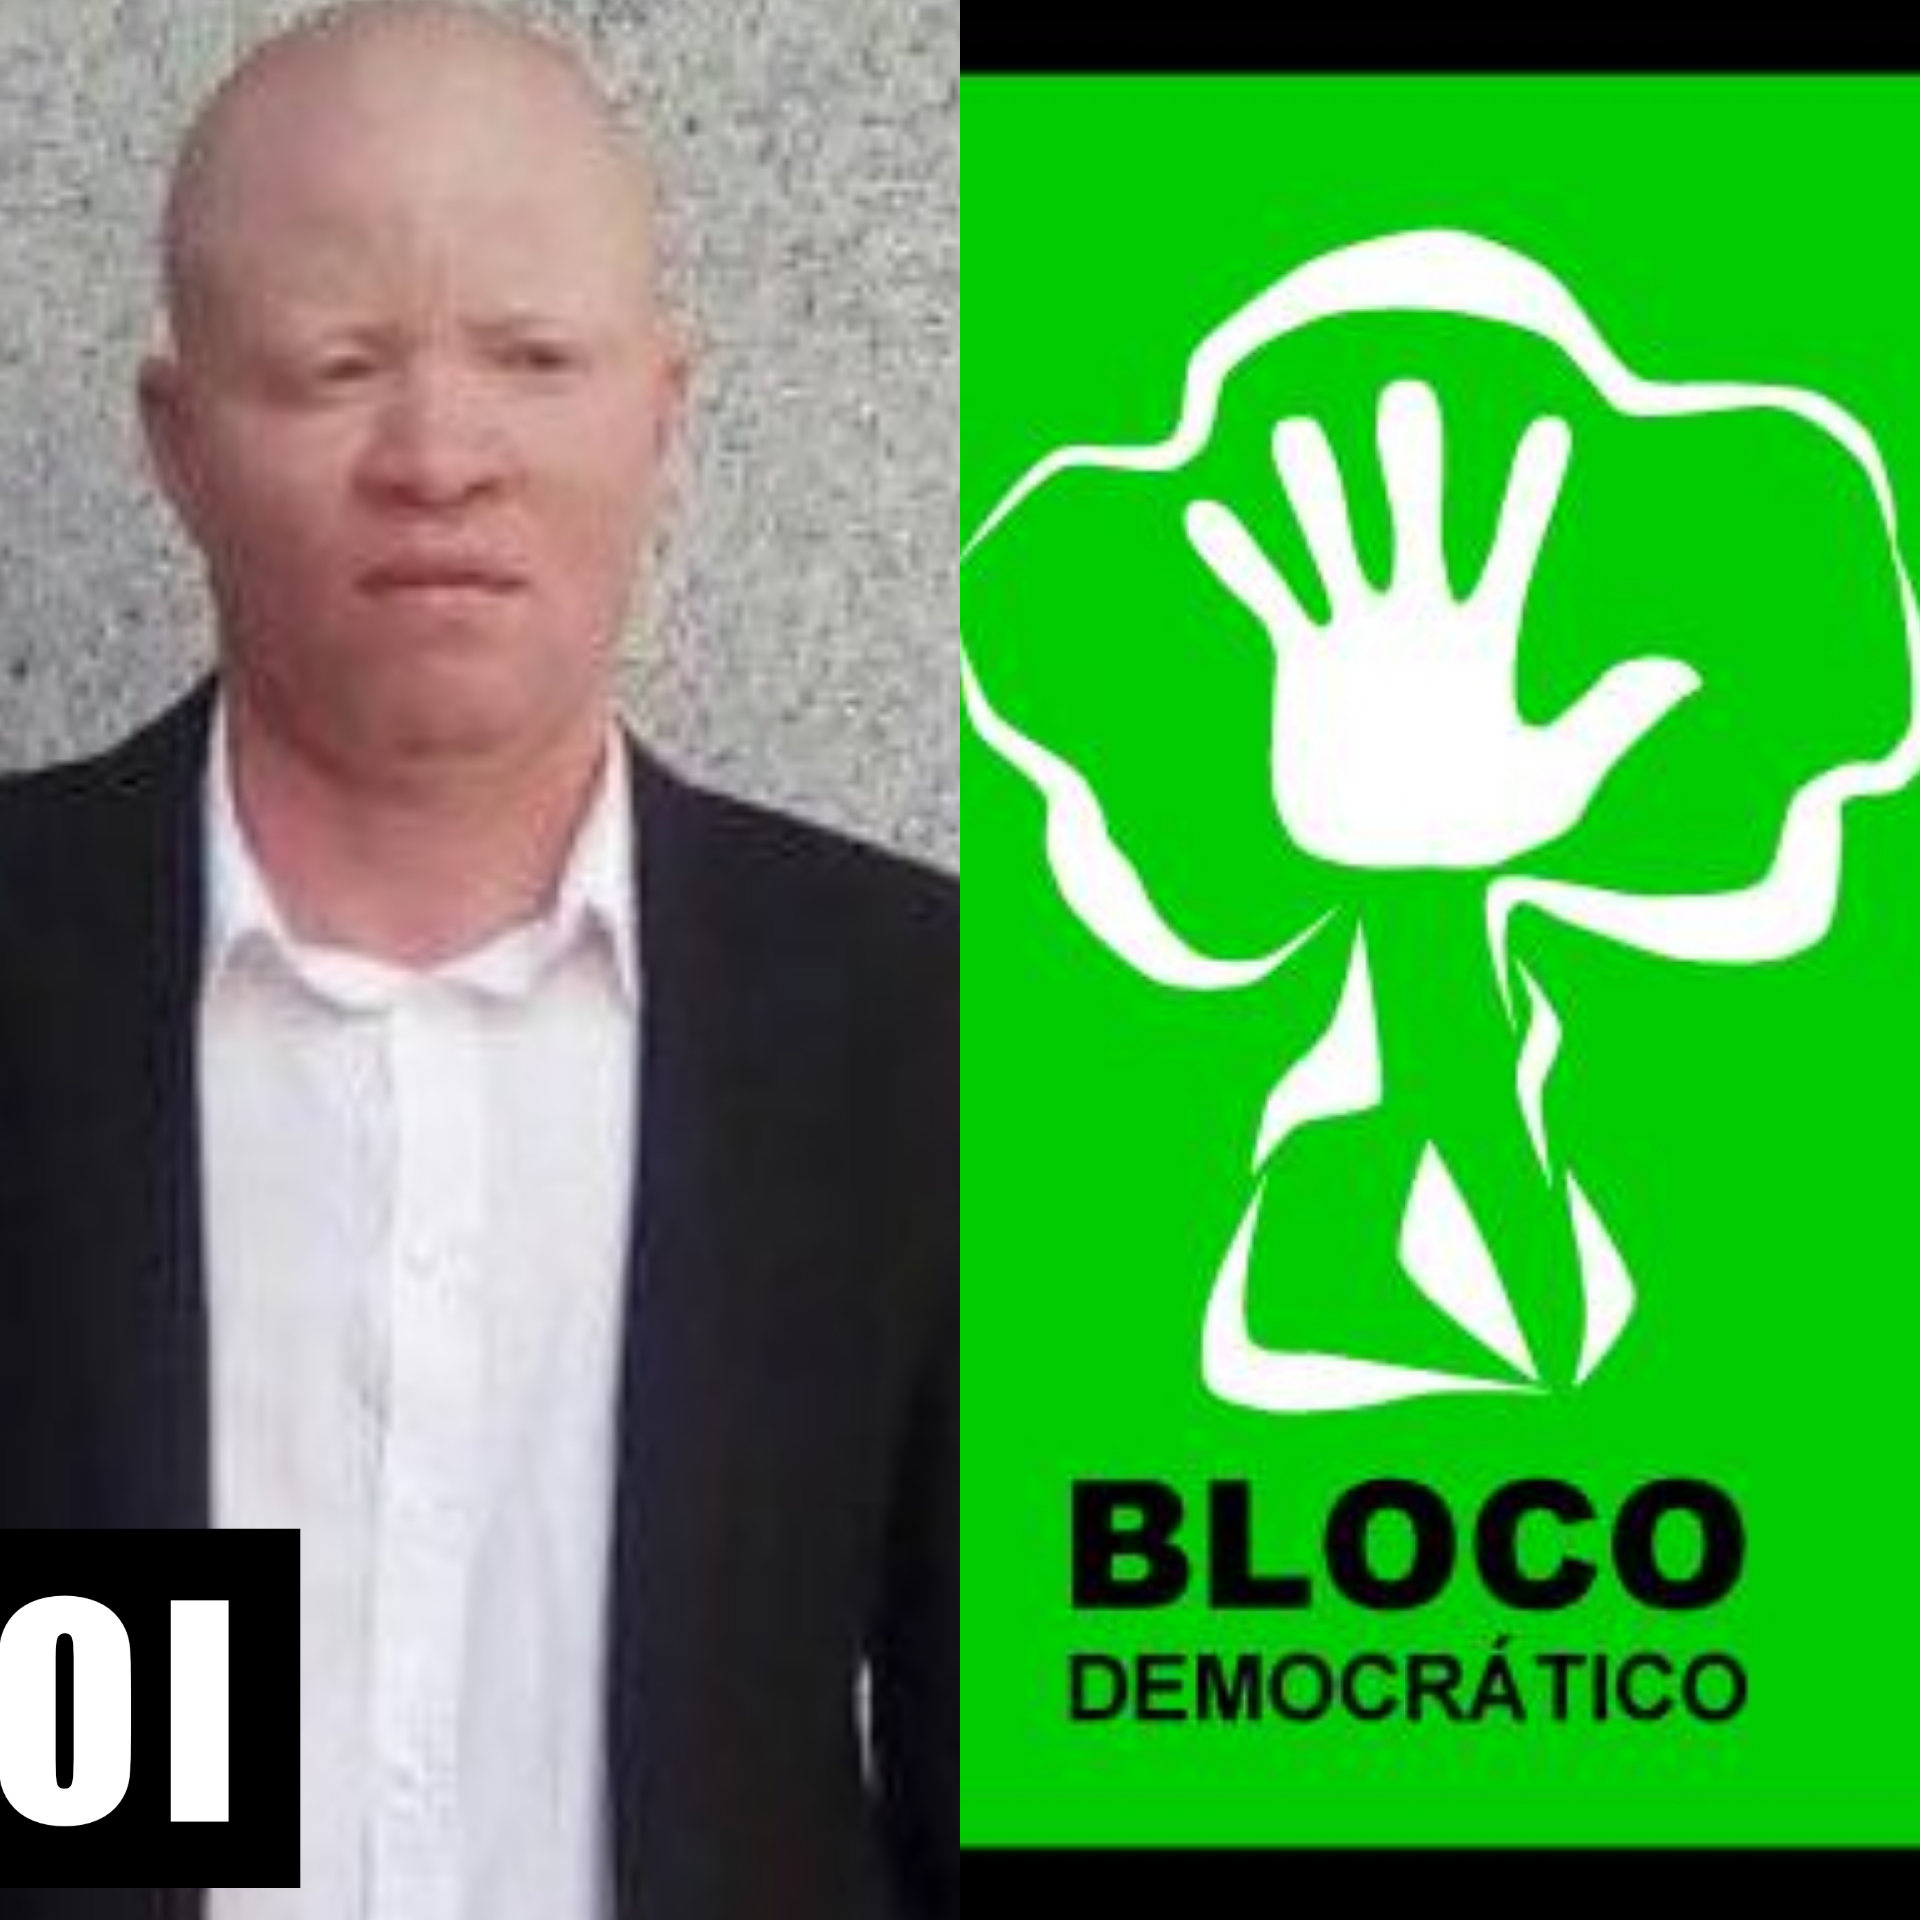 “Para além de ter sido espancado por polícias e militares, também fui vítima de abusos por ser albino”, diz secretário do BD no Kuanza-Sul